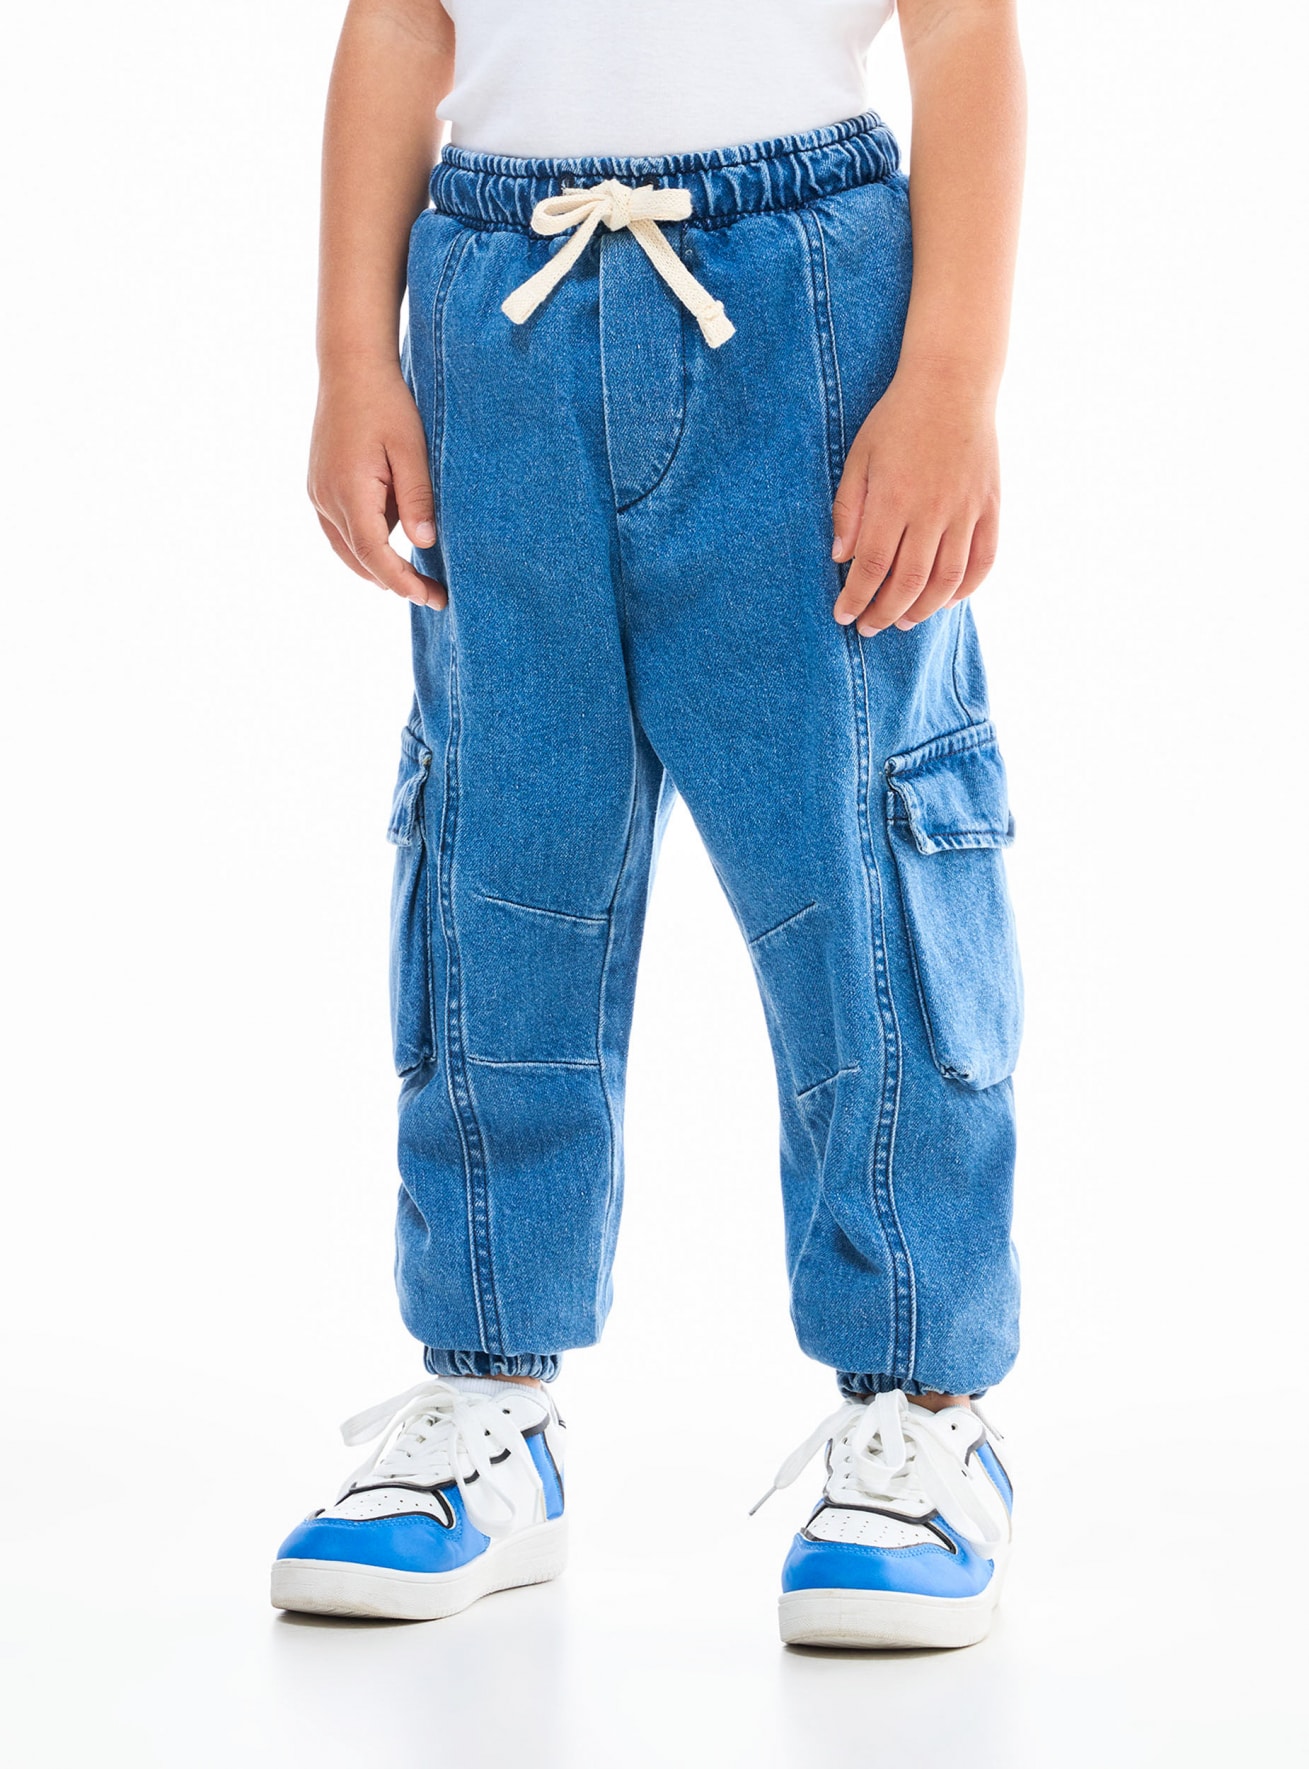 Pantalone Jeans Lungo Bambino Kids